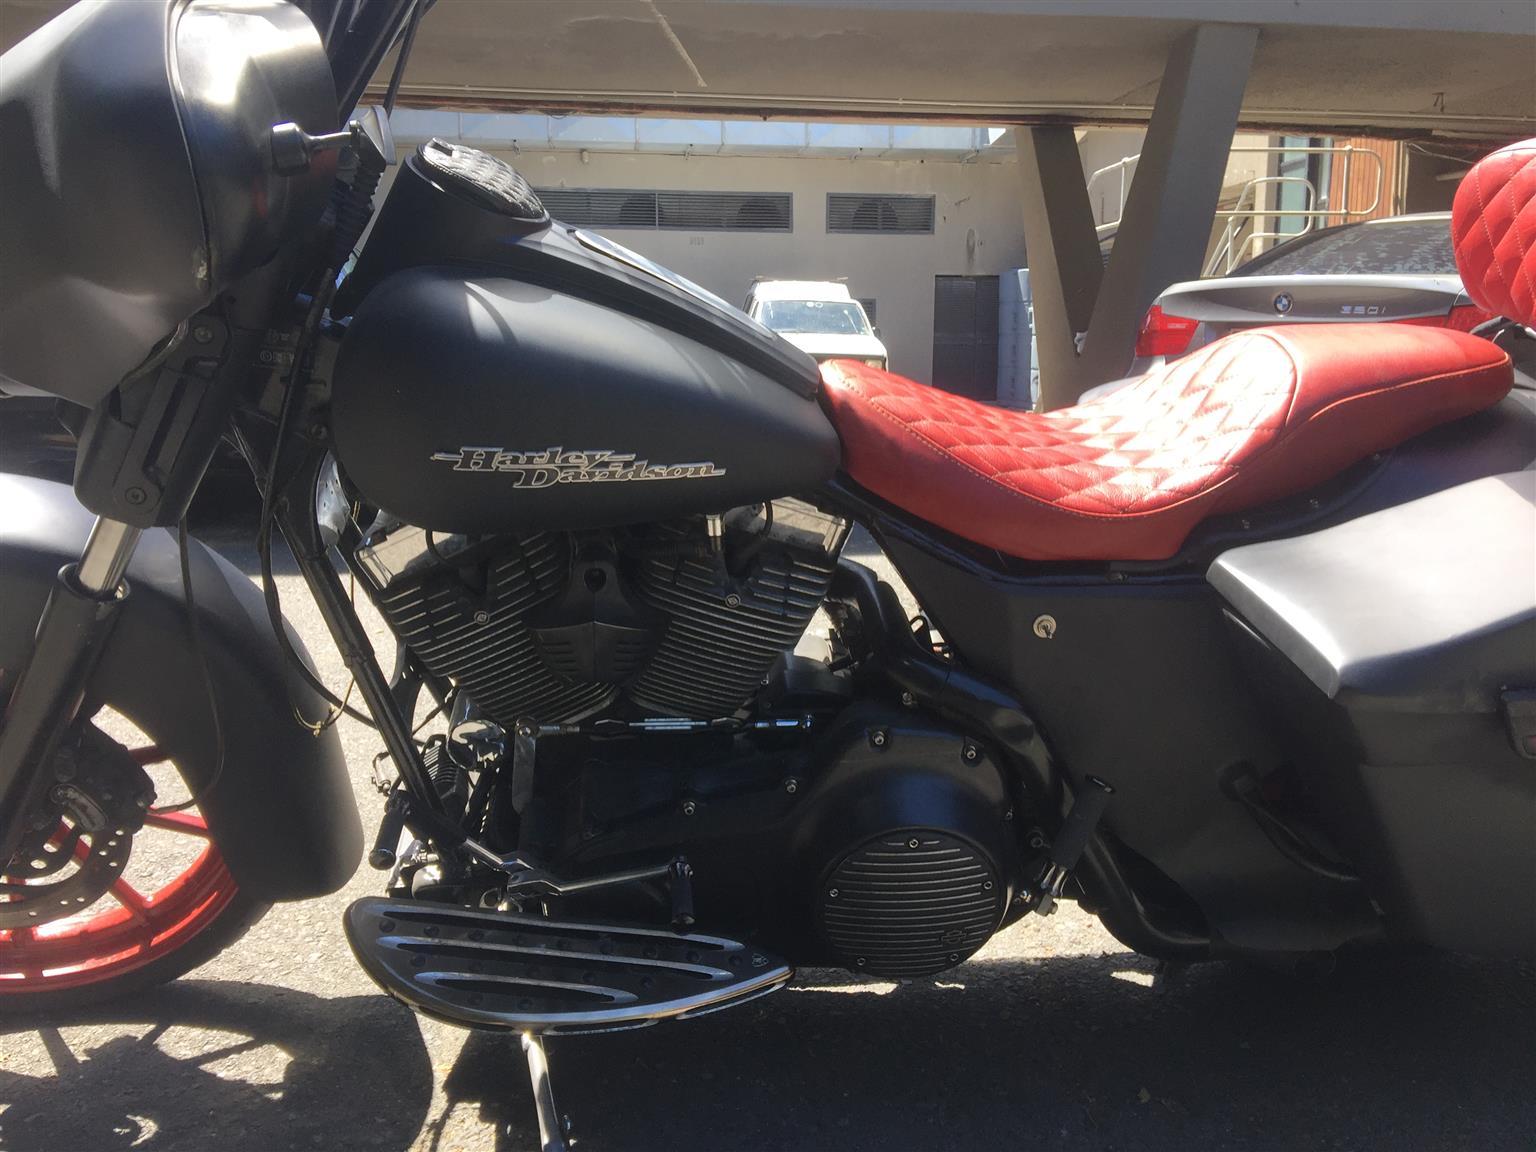 Custom Harley Davidson Bagger on of kind